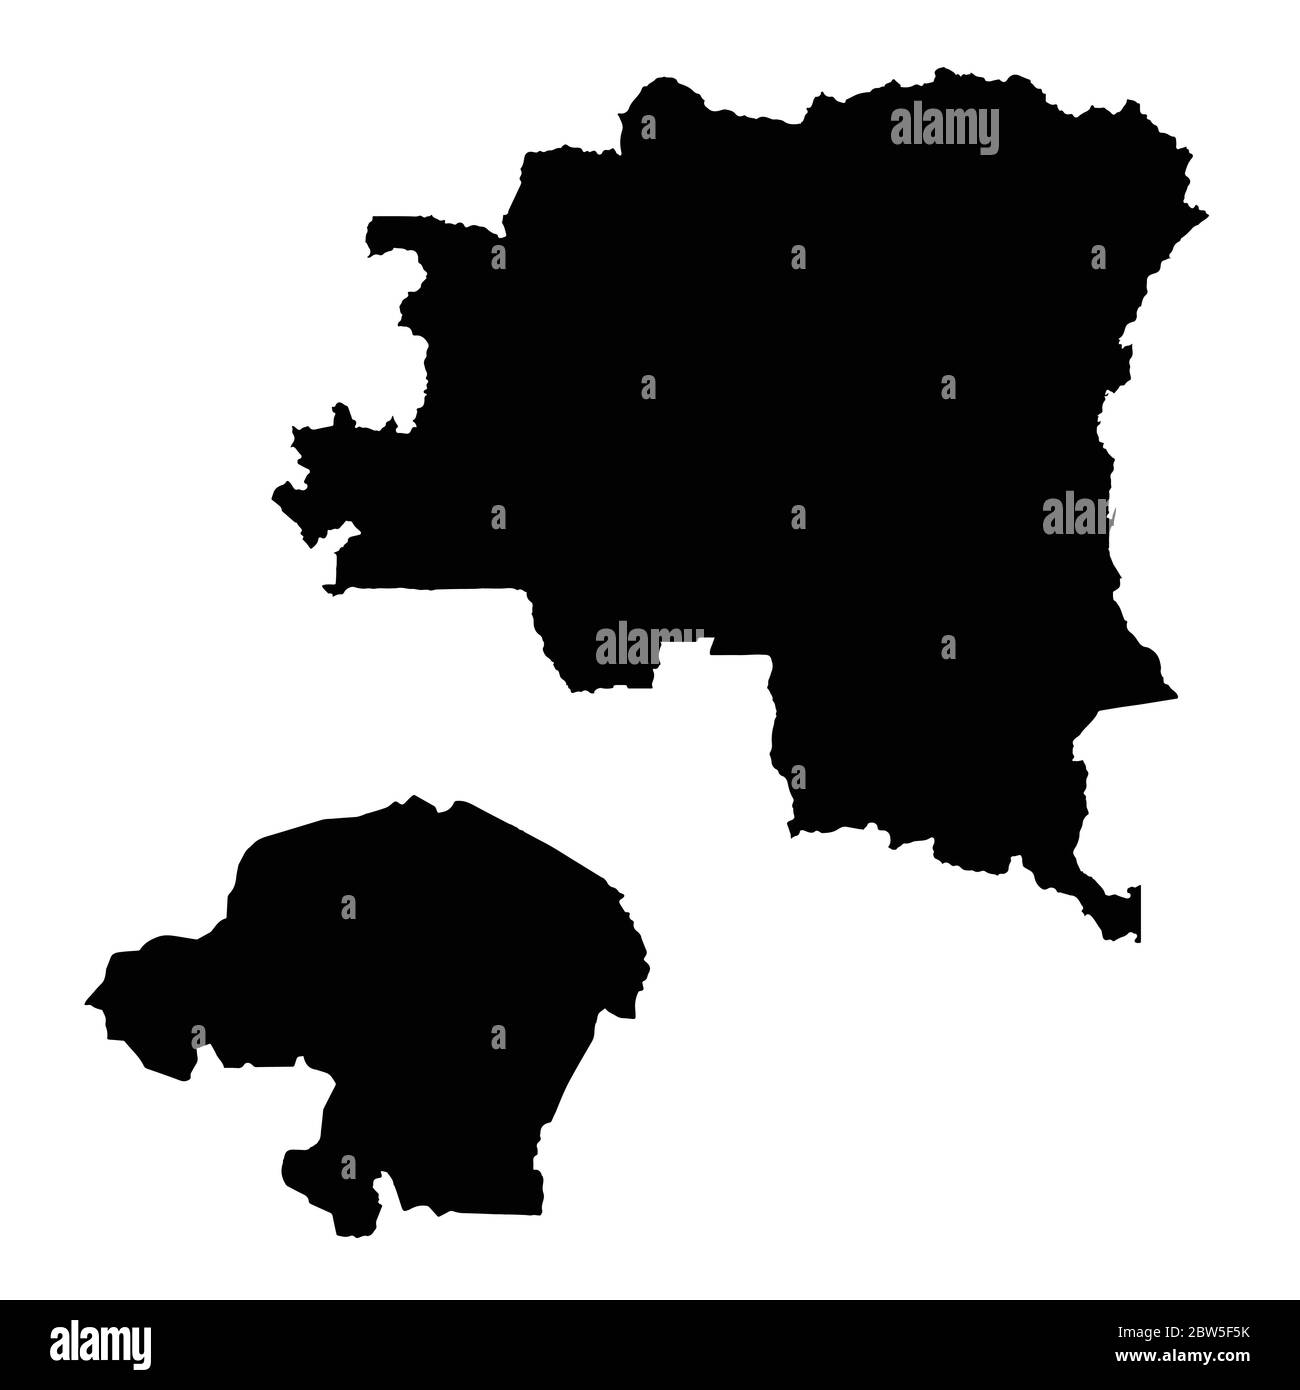 Vektorkarte Demokratische Republik Kongo und Kinshasa. Land und Hauptstadt. Isolierte Vektorgrafik. Schwarz auf weißem Hintergrund. EPS 10-Bild Stock Vektor